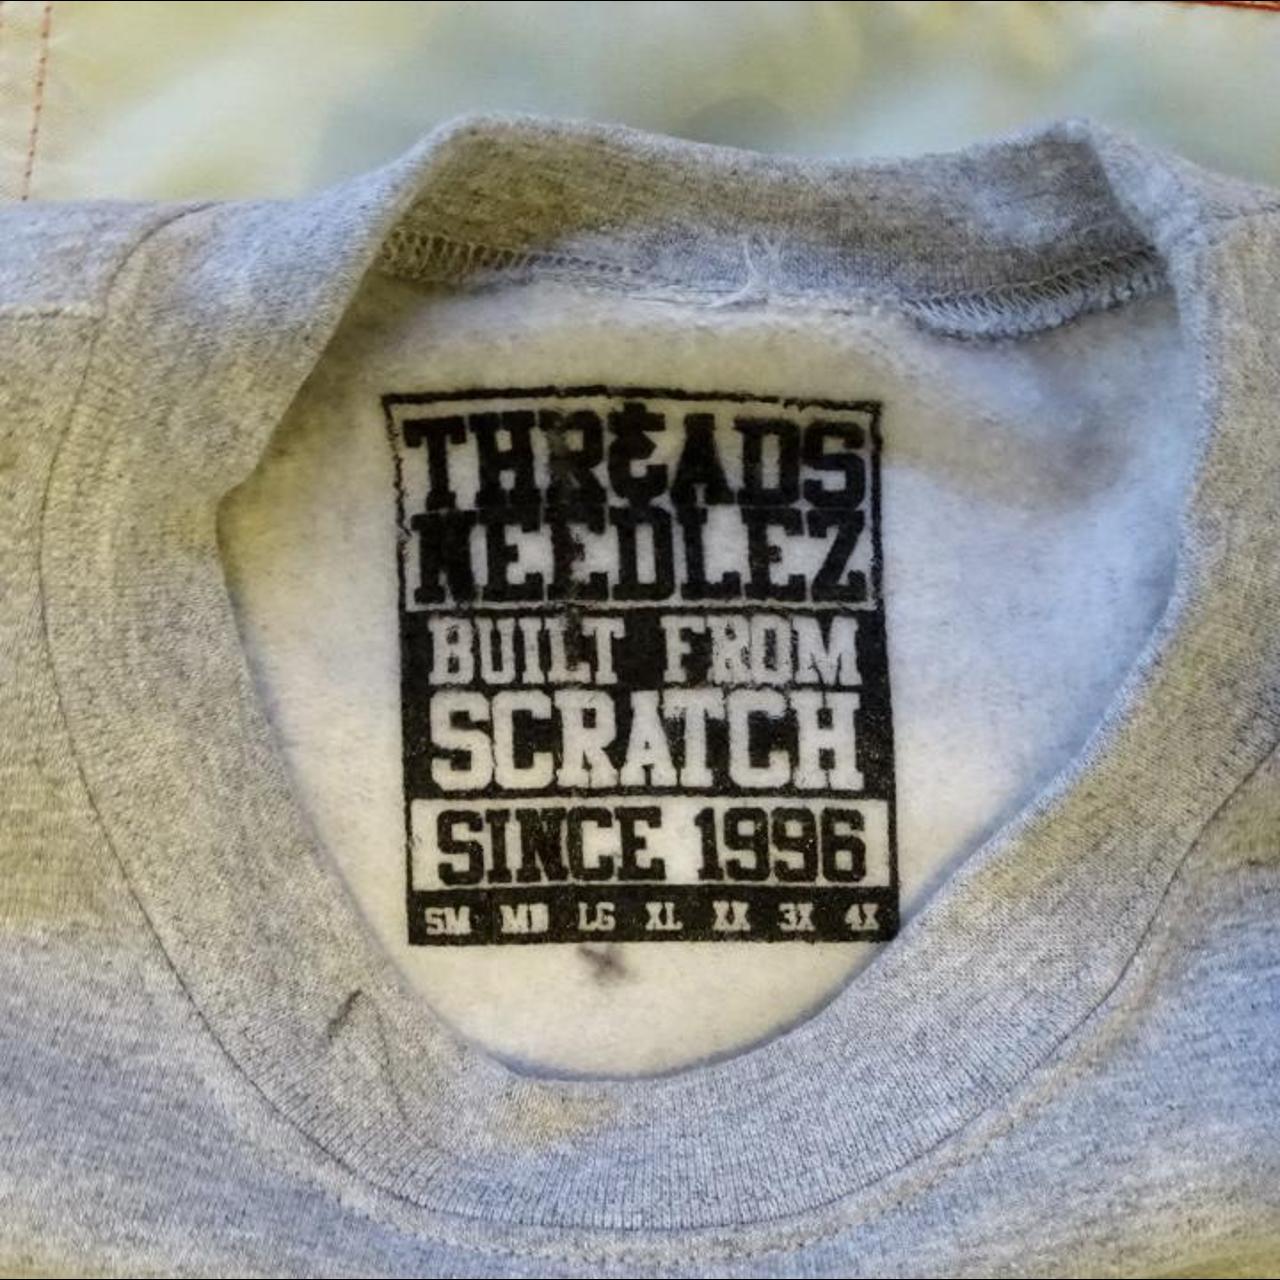 Product Image 4 - Fresh Crewneck sweatshirt. Free shipping.

Size